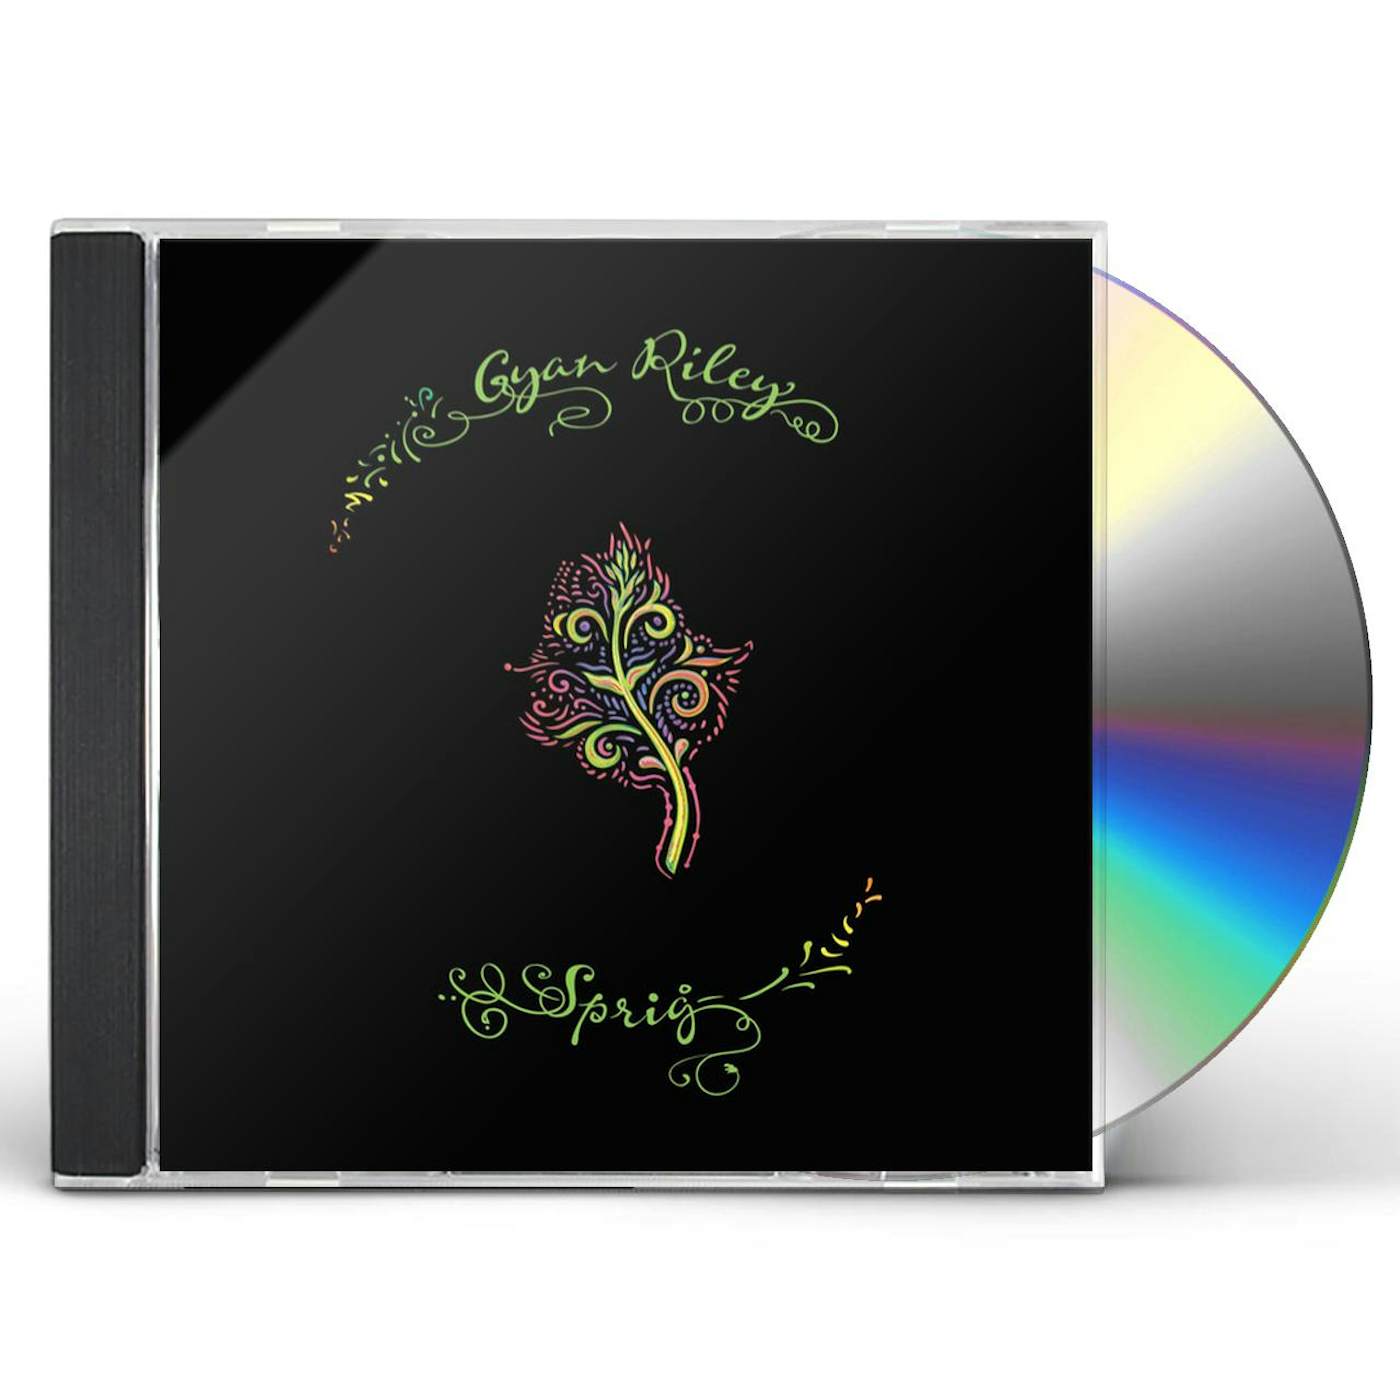 Gyan Riley SPRIG CD